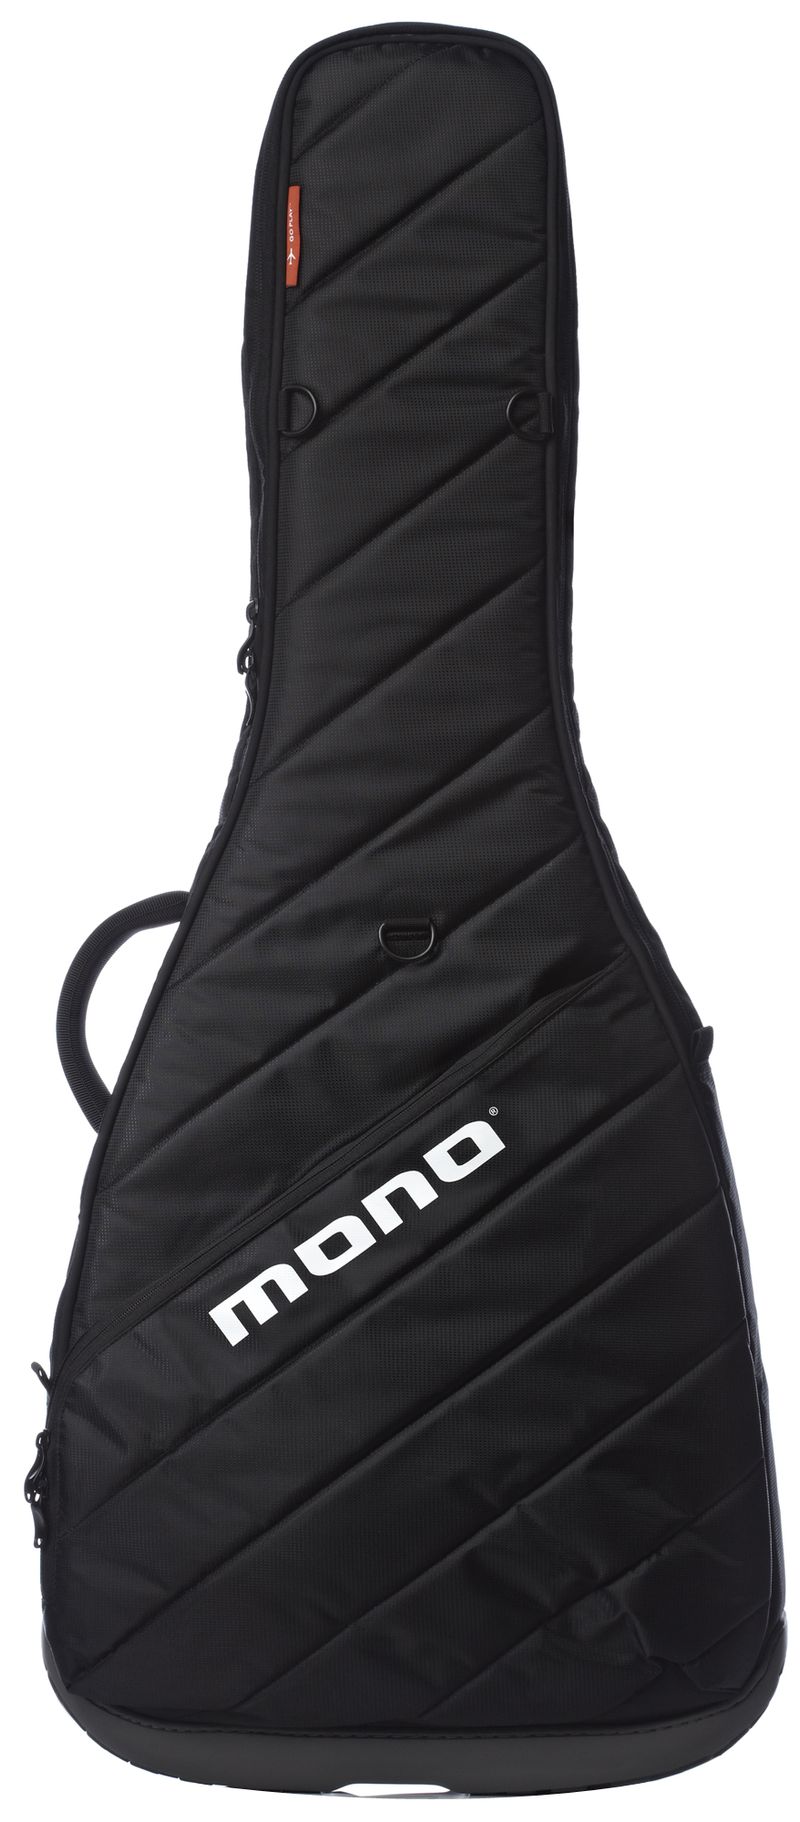 Mono M80 Vertigo Gig Bag for Semi-Hollow Electric Guitars - Cosmo